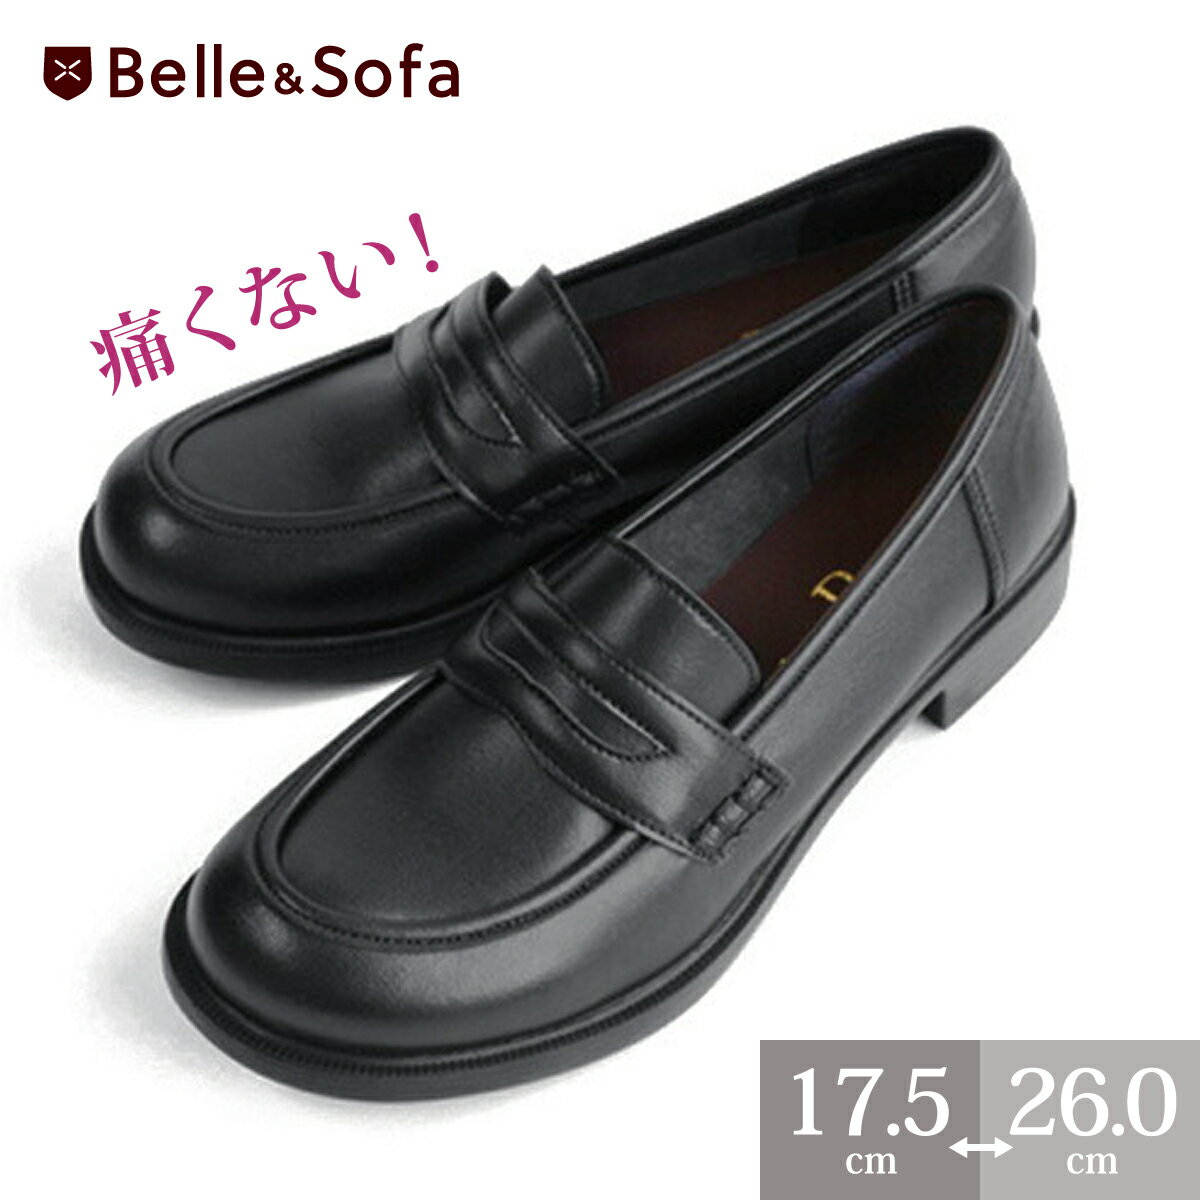 やさしい靴工房Belle&Sofa]『ソフトコインローファーA6407』